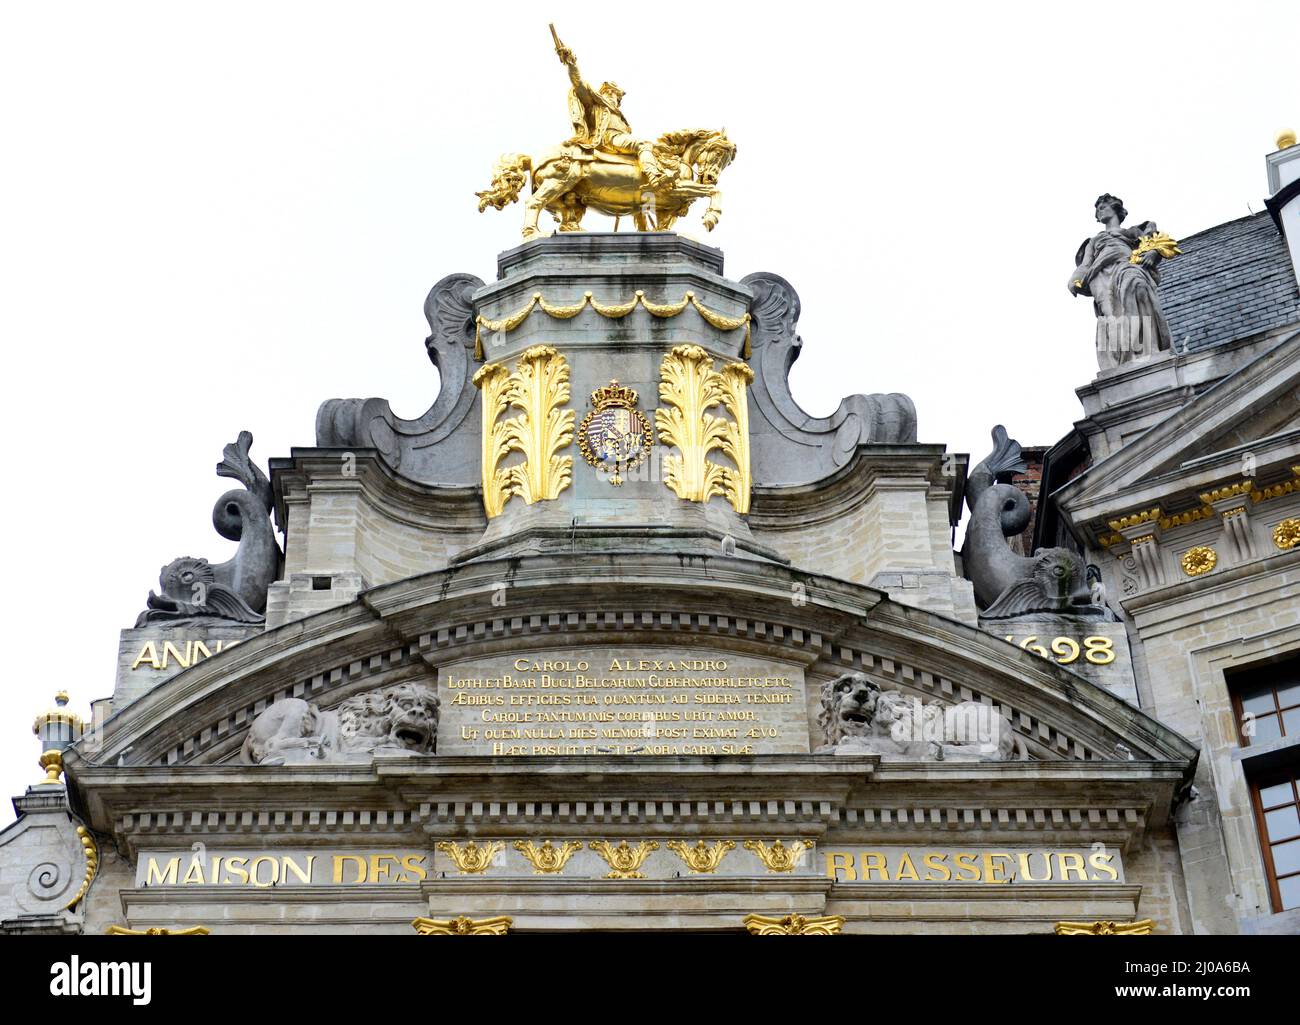 La statue équestre de Charles-Alexandre de Lorraine au sommet de la Maison de l'Arbre d'Or, dans la grande place de Bruxelles, Belgique. Banque D'Images